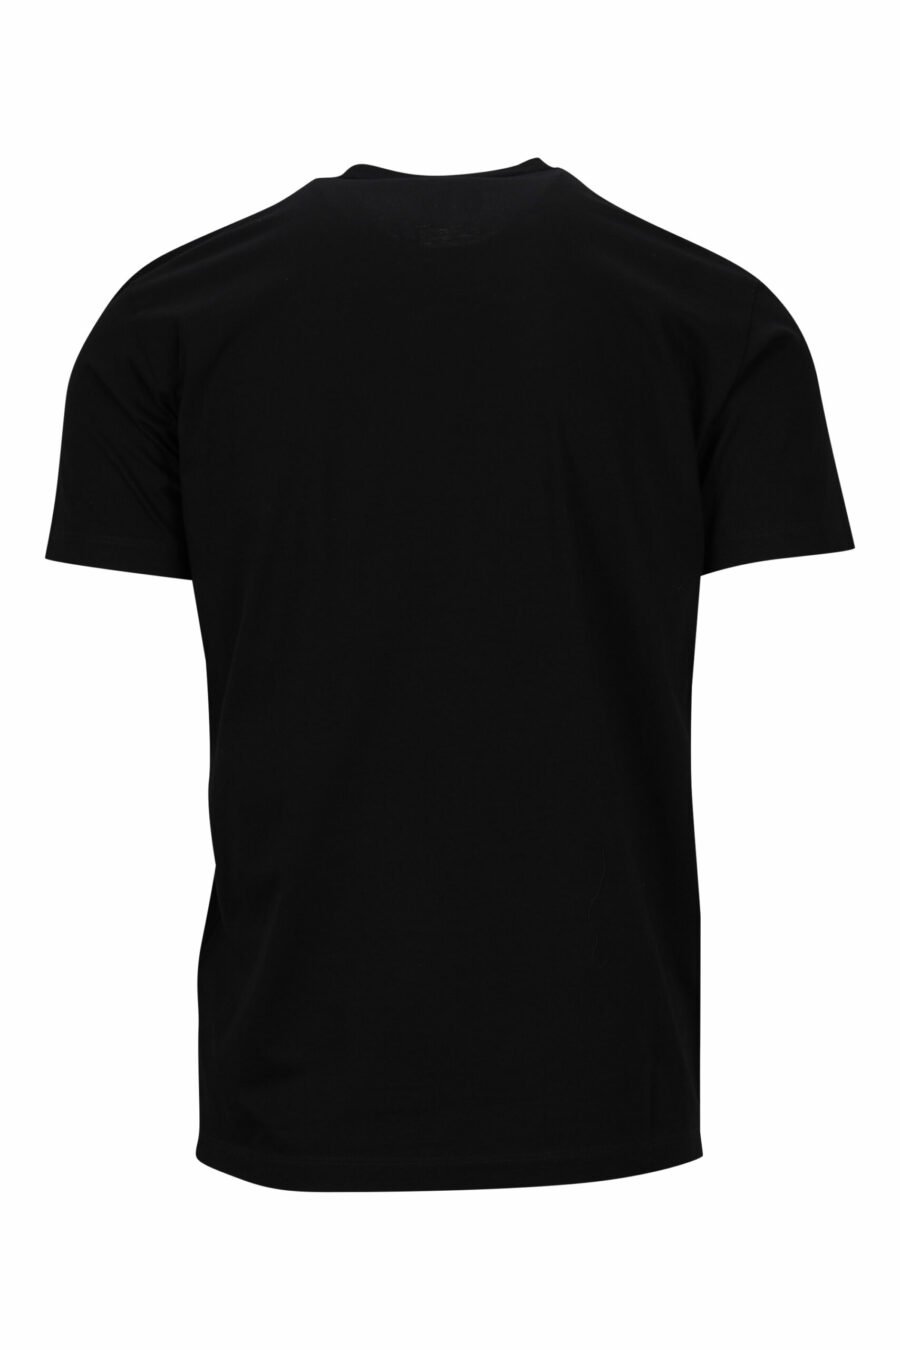 T-shirt preta com rabiscos "ícone" maxilogo - 8054148362898 1 à escala